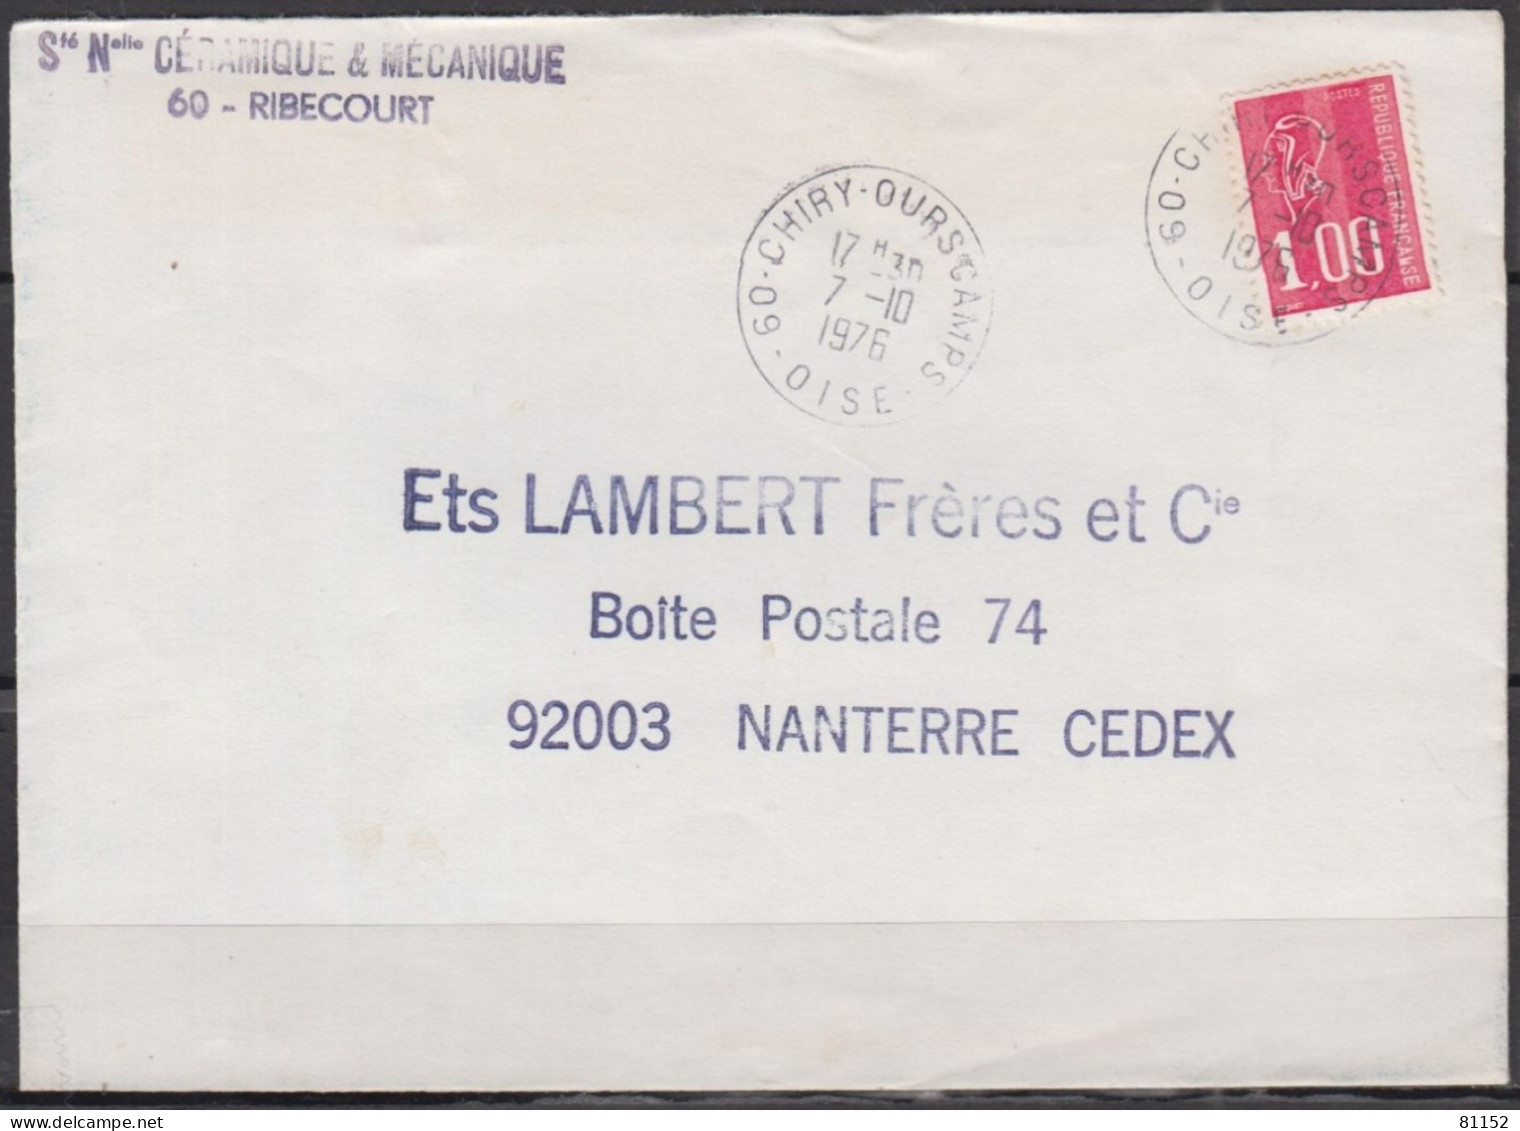 2 Lettres  Pub De 60 RIBECOURT 1976 Et 1977 Pour 92 NANTERRE Avec Mne De BEQUET 1.00F Postées à 60 CHIRY-OURSCAMPS - 1971-1976 Marianne Of Béquet